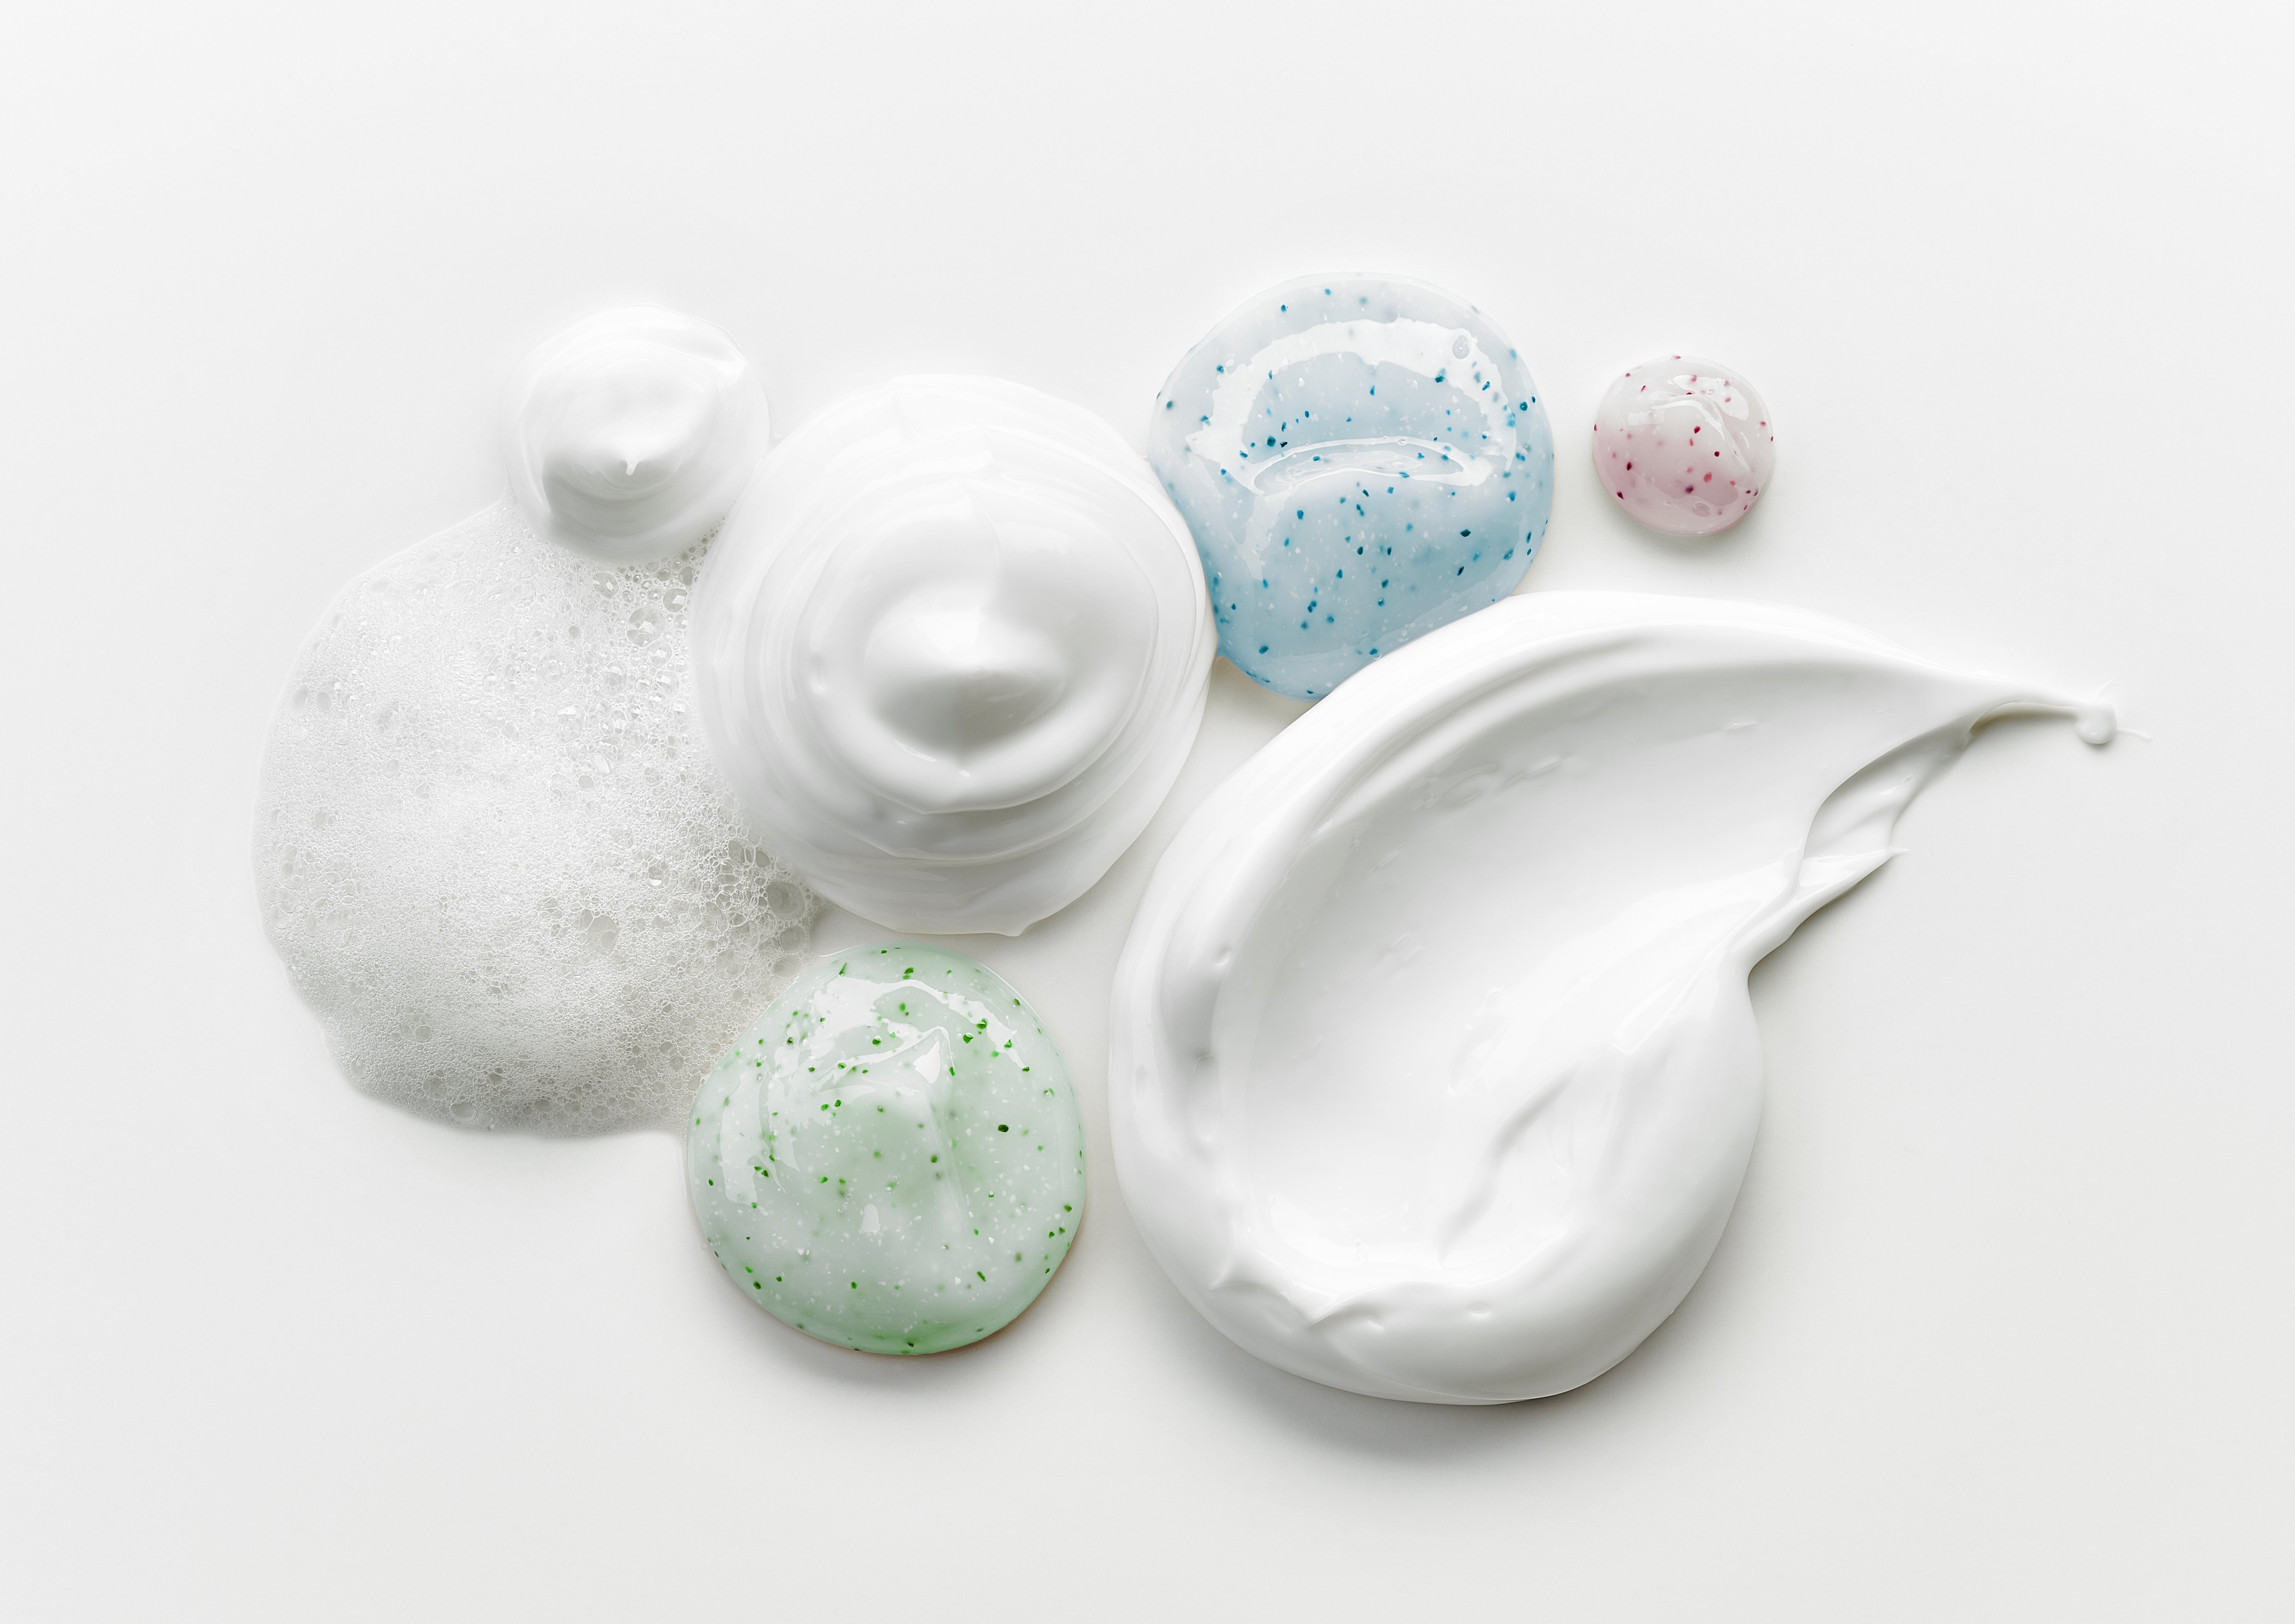 Darstellung verschiedener Cremes und Hautpflege-Produkte nebeneinander